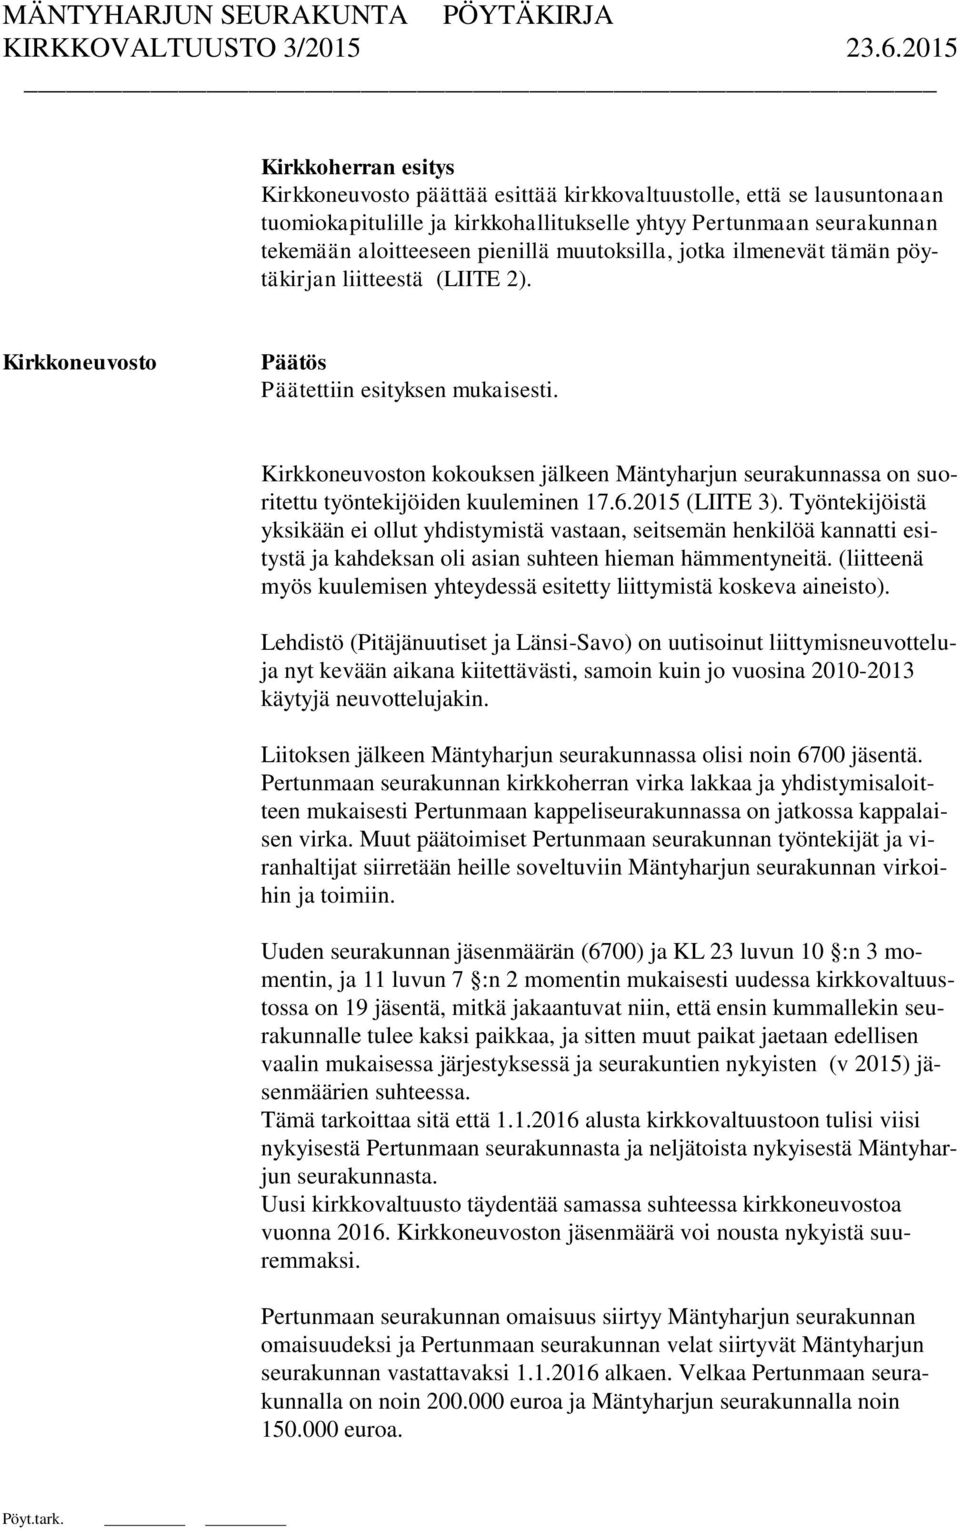 Kirkkoneuvoston kokouksen jälkeen Mäntyharjun seurakunnassa on suoritettu työntekijöiden kuuleminen 17.6.2015 (LIITE 3).